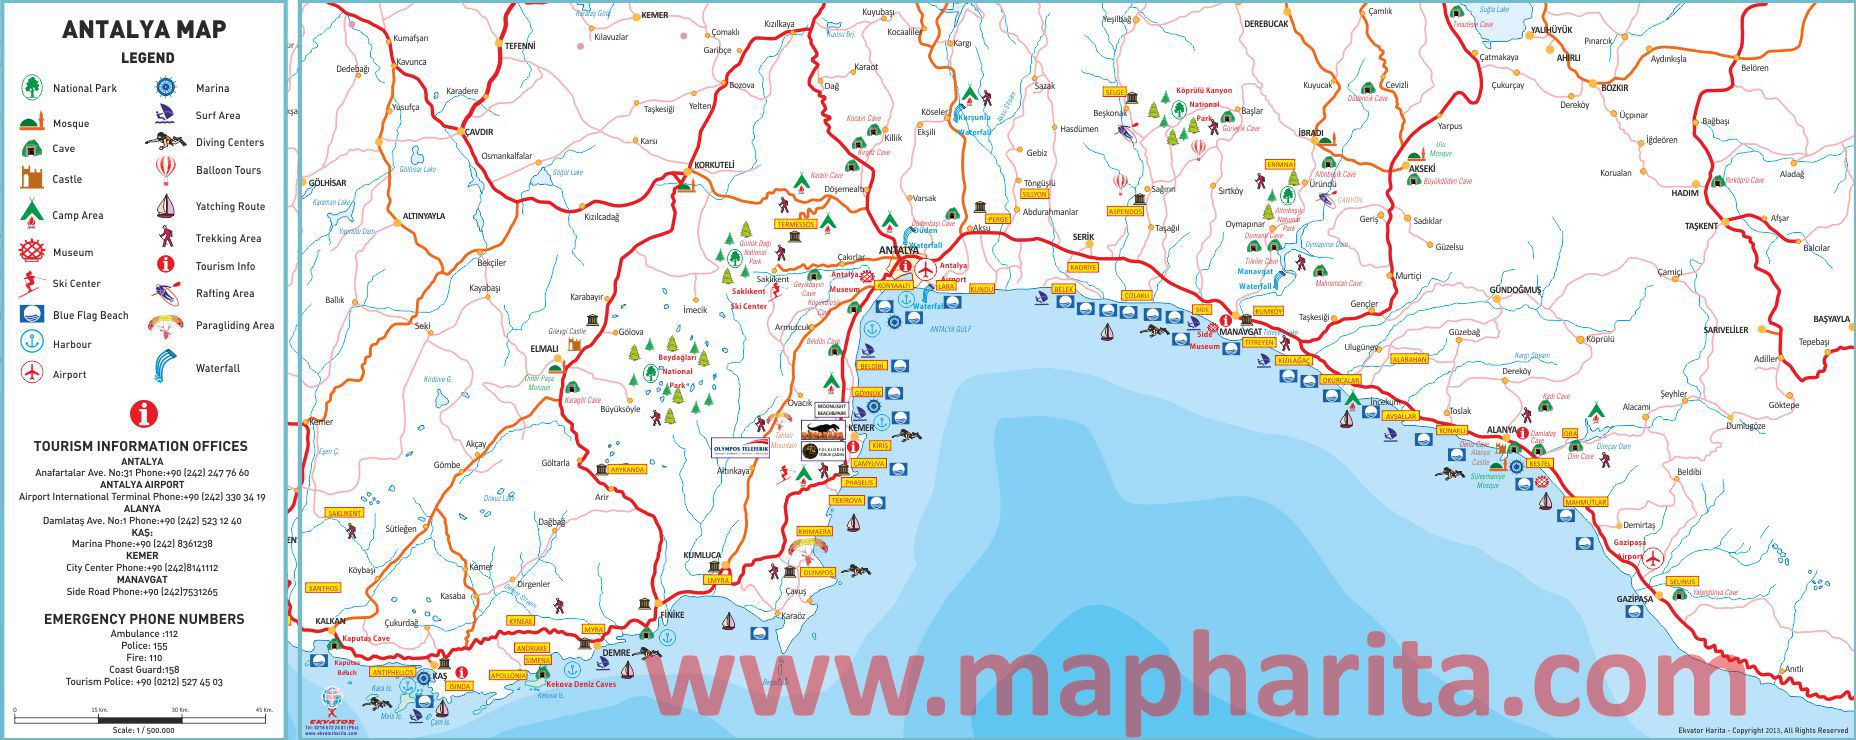 Alanya Turistik Haritası Detaylı